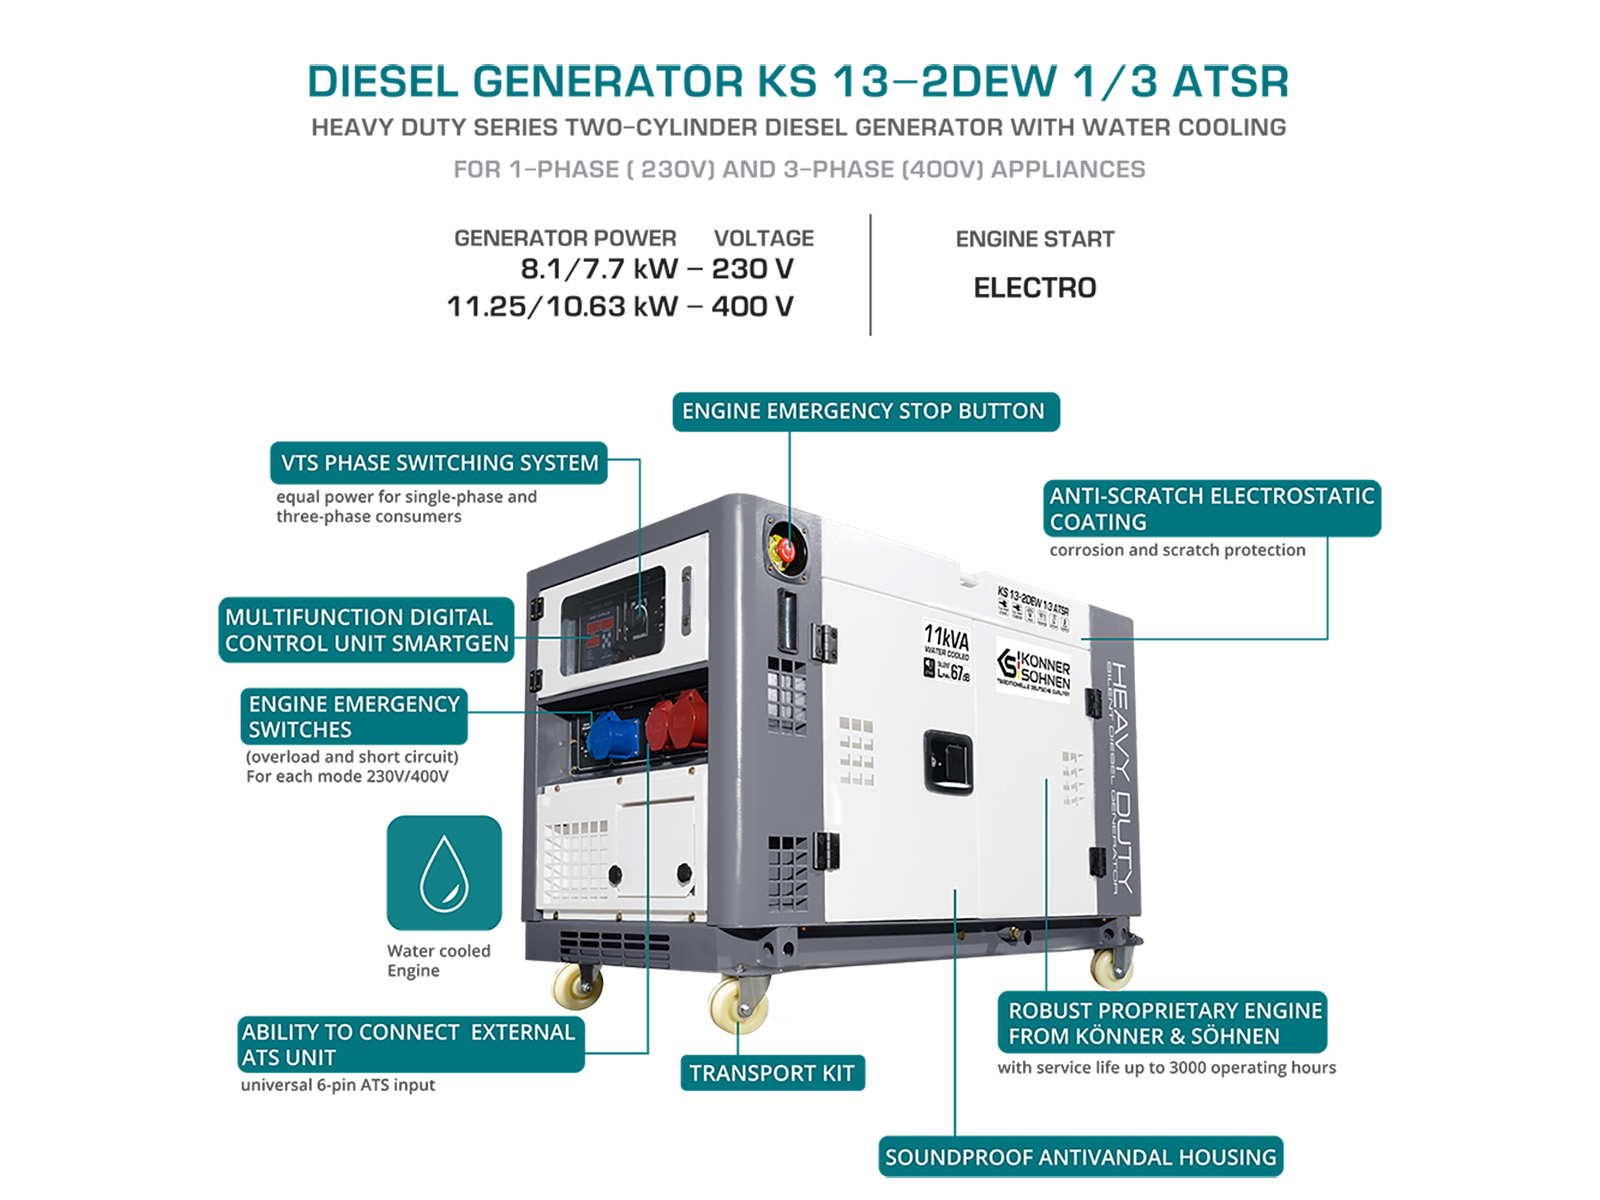 Diesel generator "Könner & Söhnen" KS 13-2DEW 1/3 ATSR